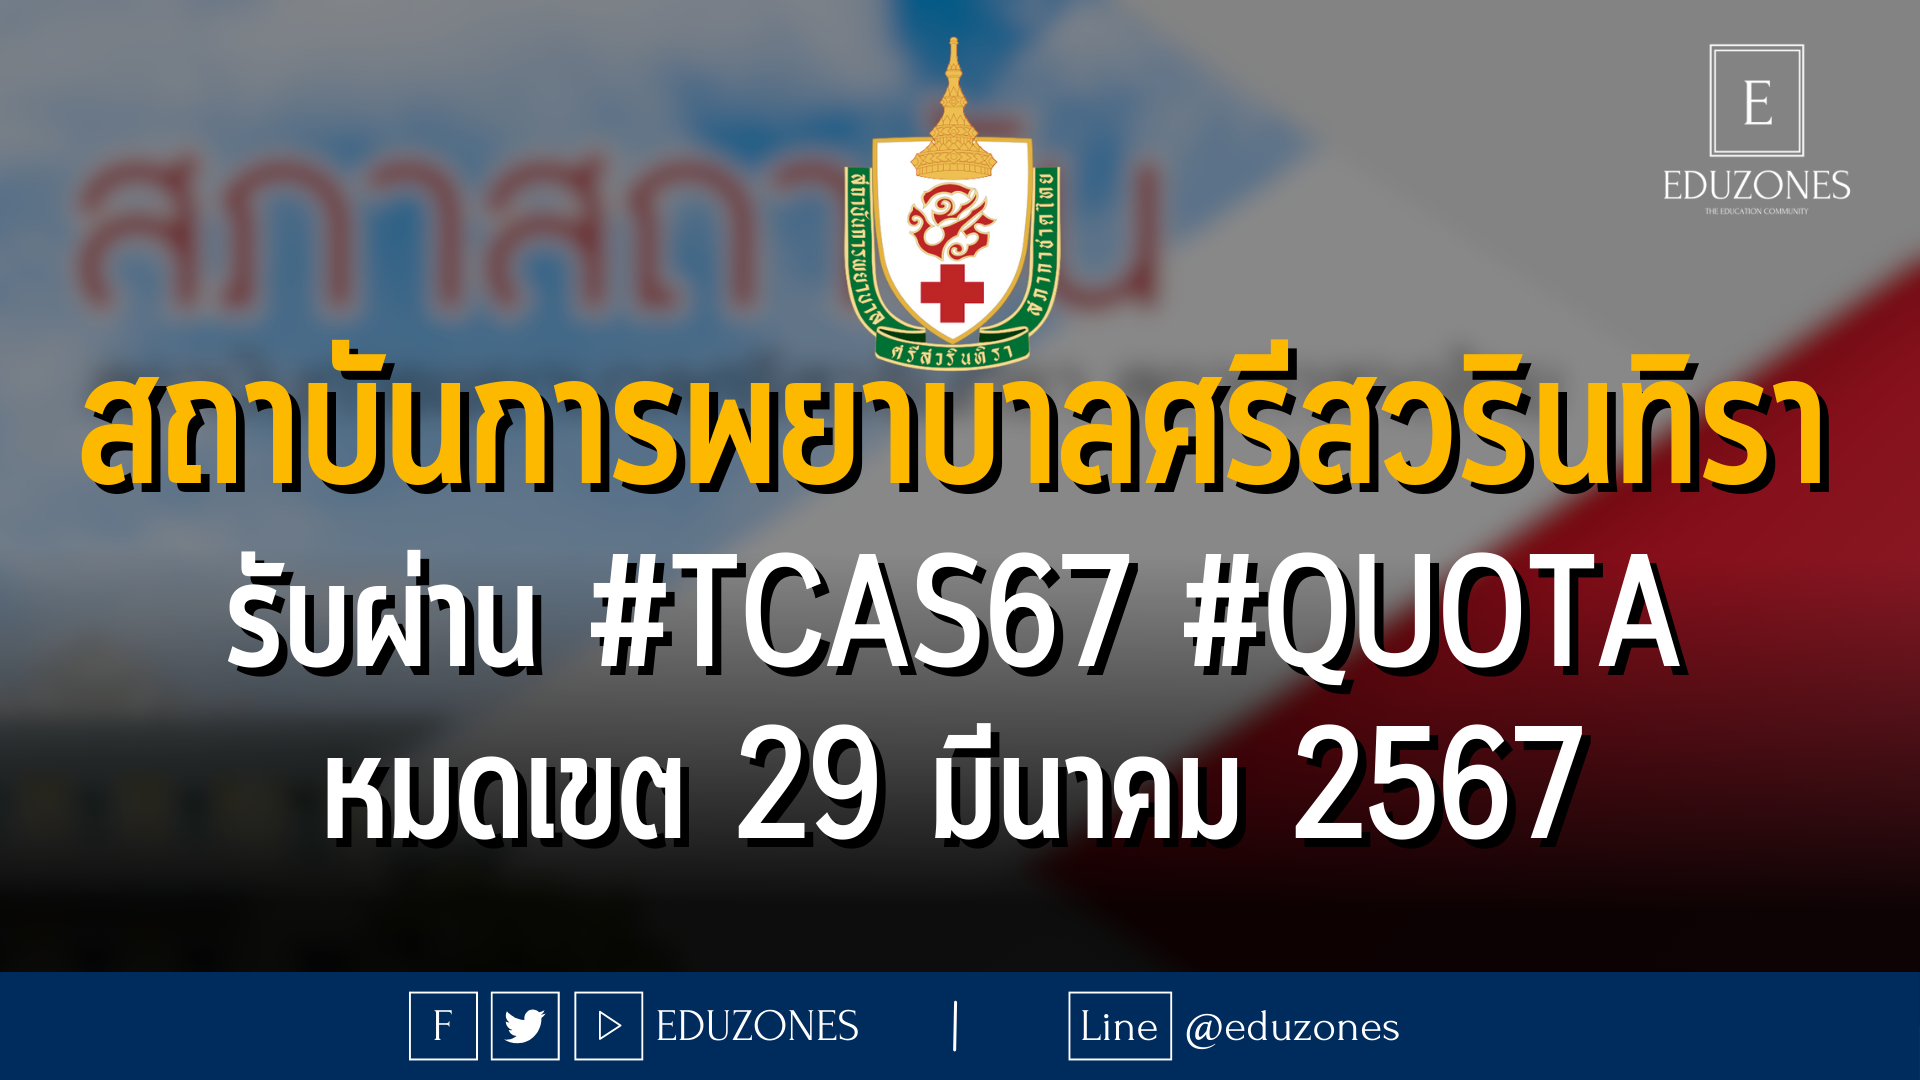 สถาบันการพยาบาลศรีสวรินทิรา สภากาชาด รับผ่าน #TCAS67 #QUOTA : หมดเขต 29 มีนาคม 2567